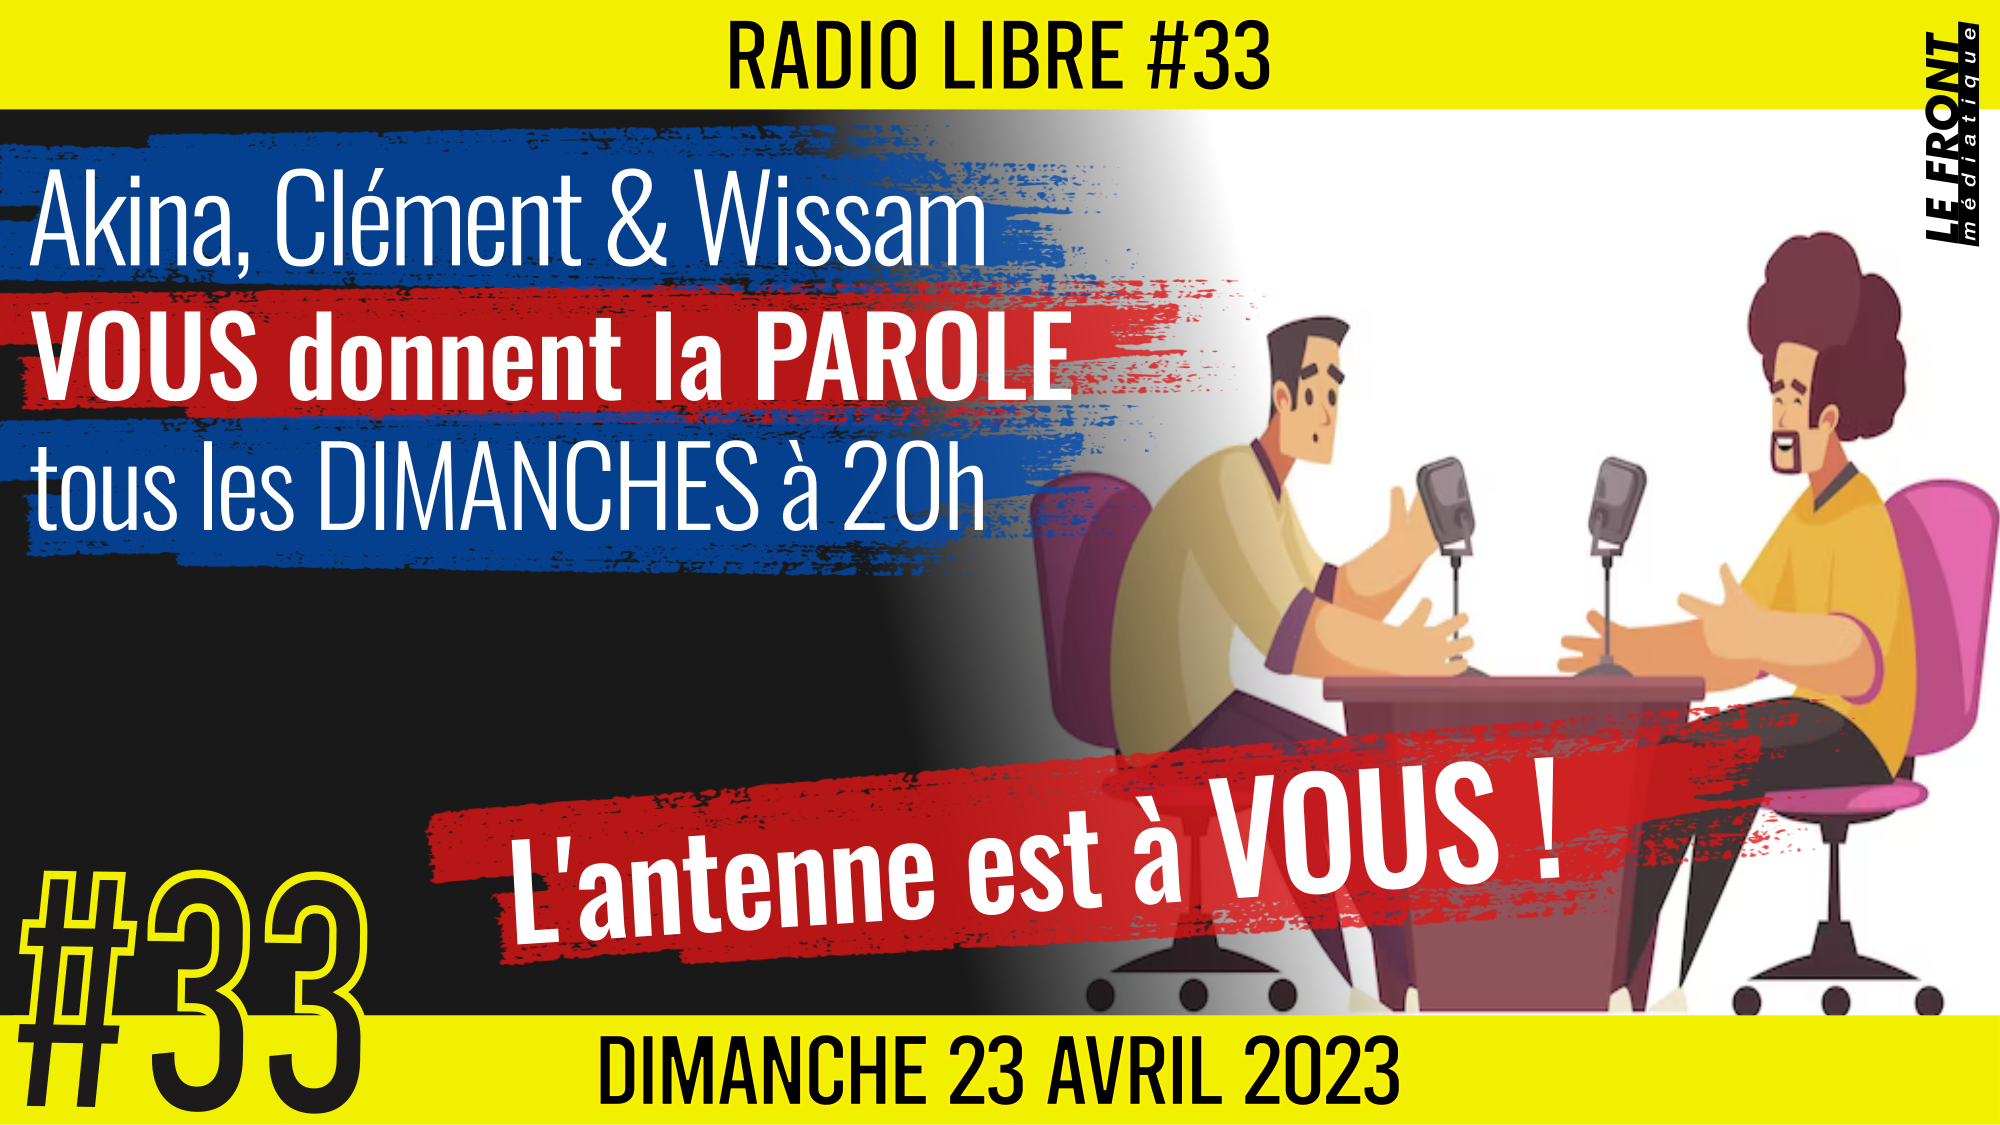 📟 RADIO LIBRE #33 🎙La Libre Antenne est à VOUS ! 🗣 Akina, Clém & Wissam 📆 23-04-2023